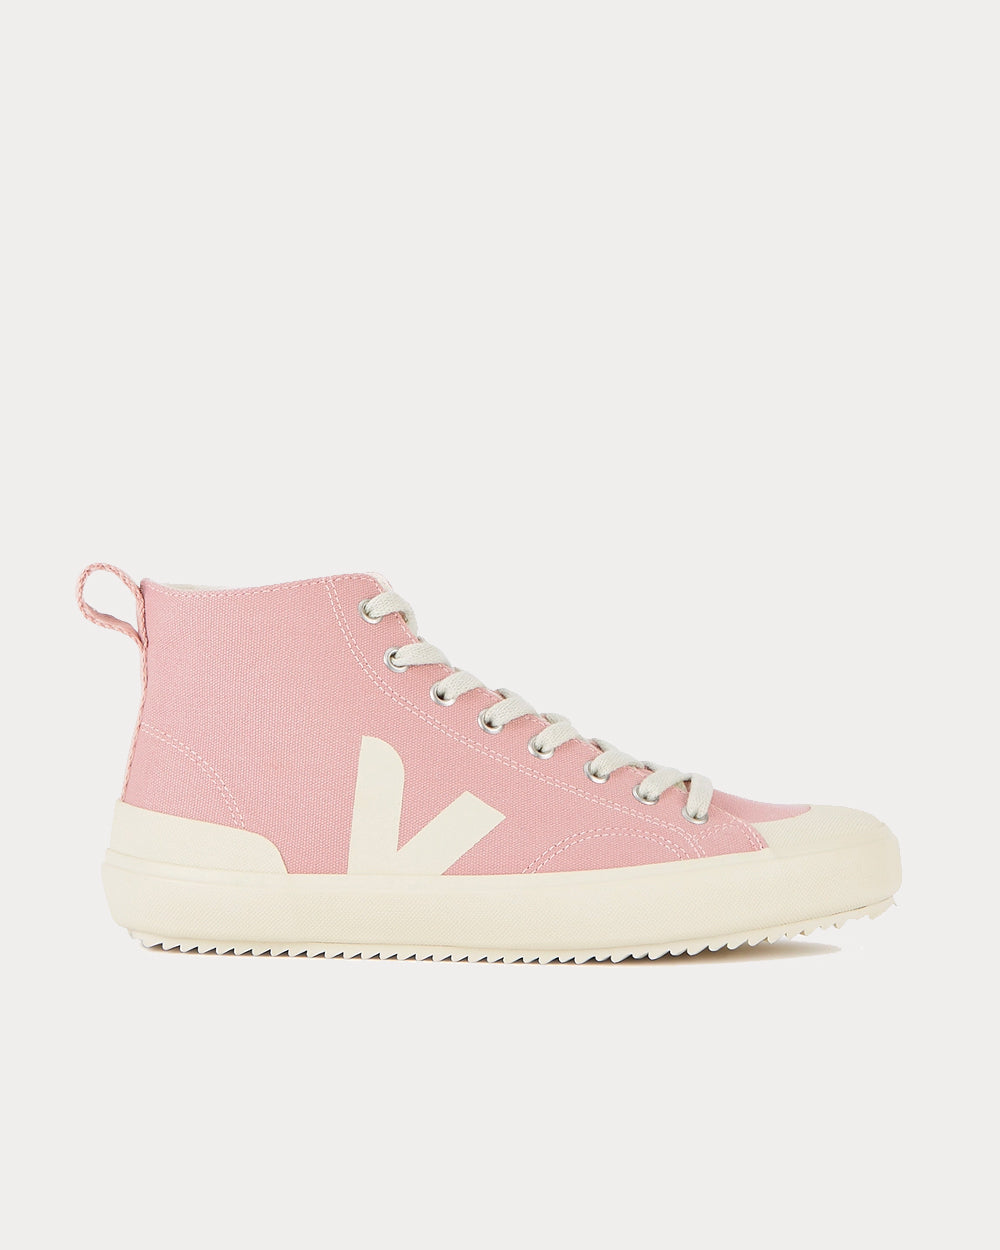 Veja Nova Pink High Top Sneakers - Sneak in Peace